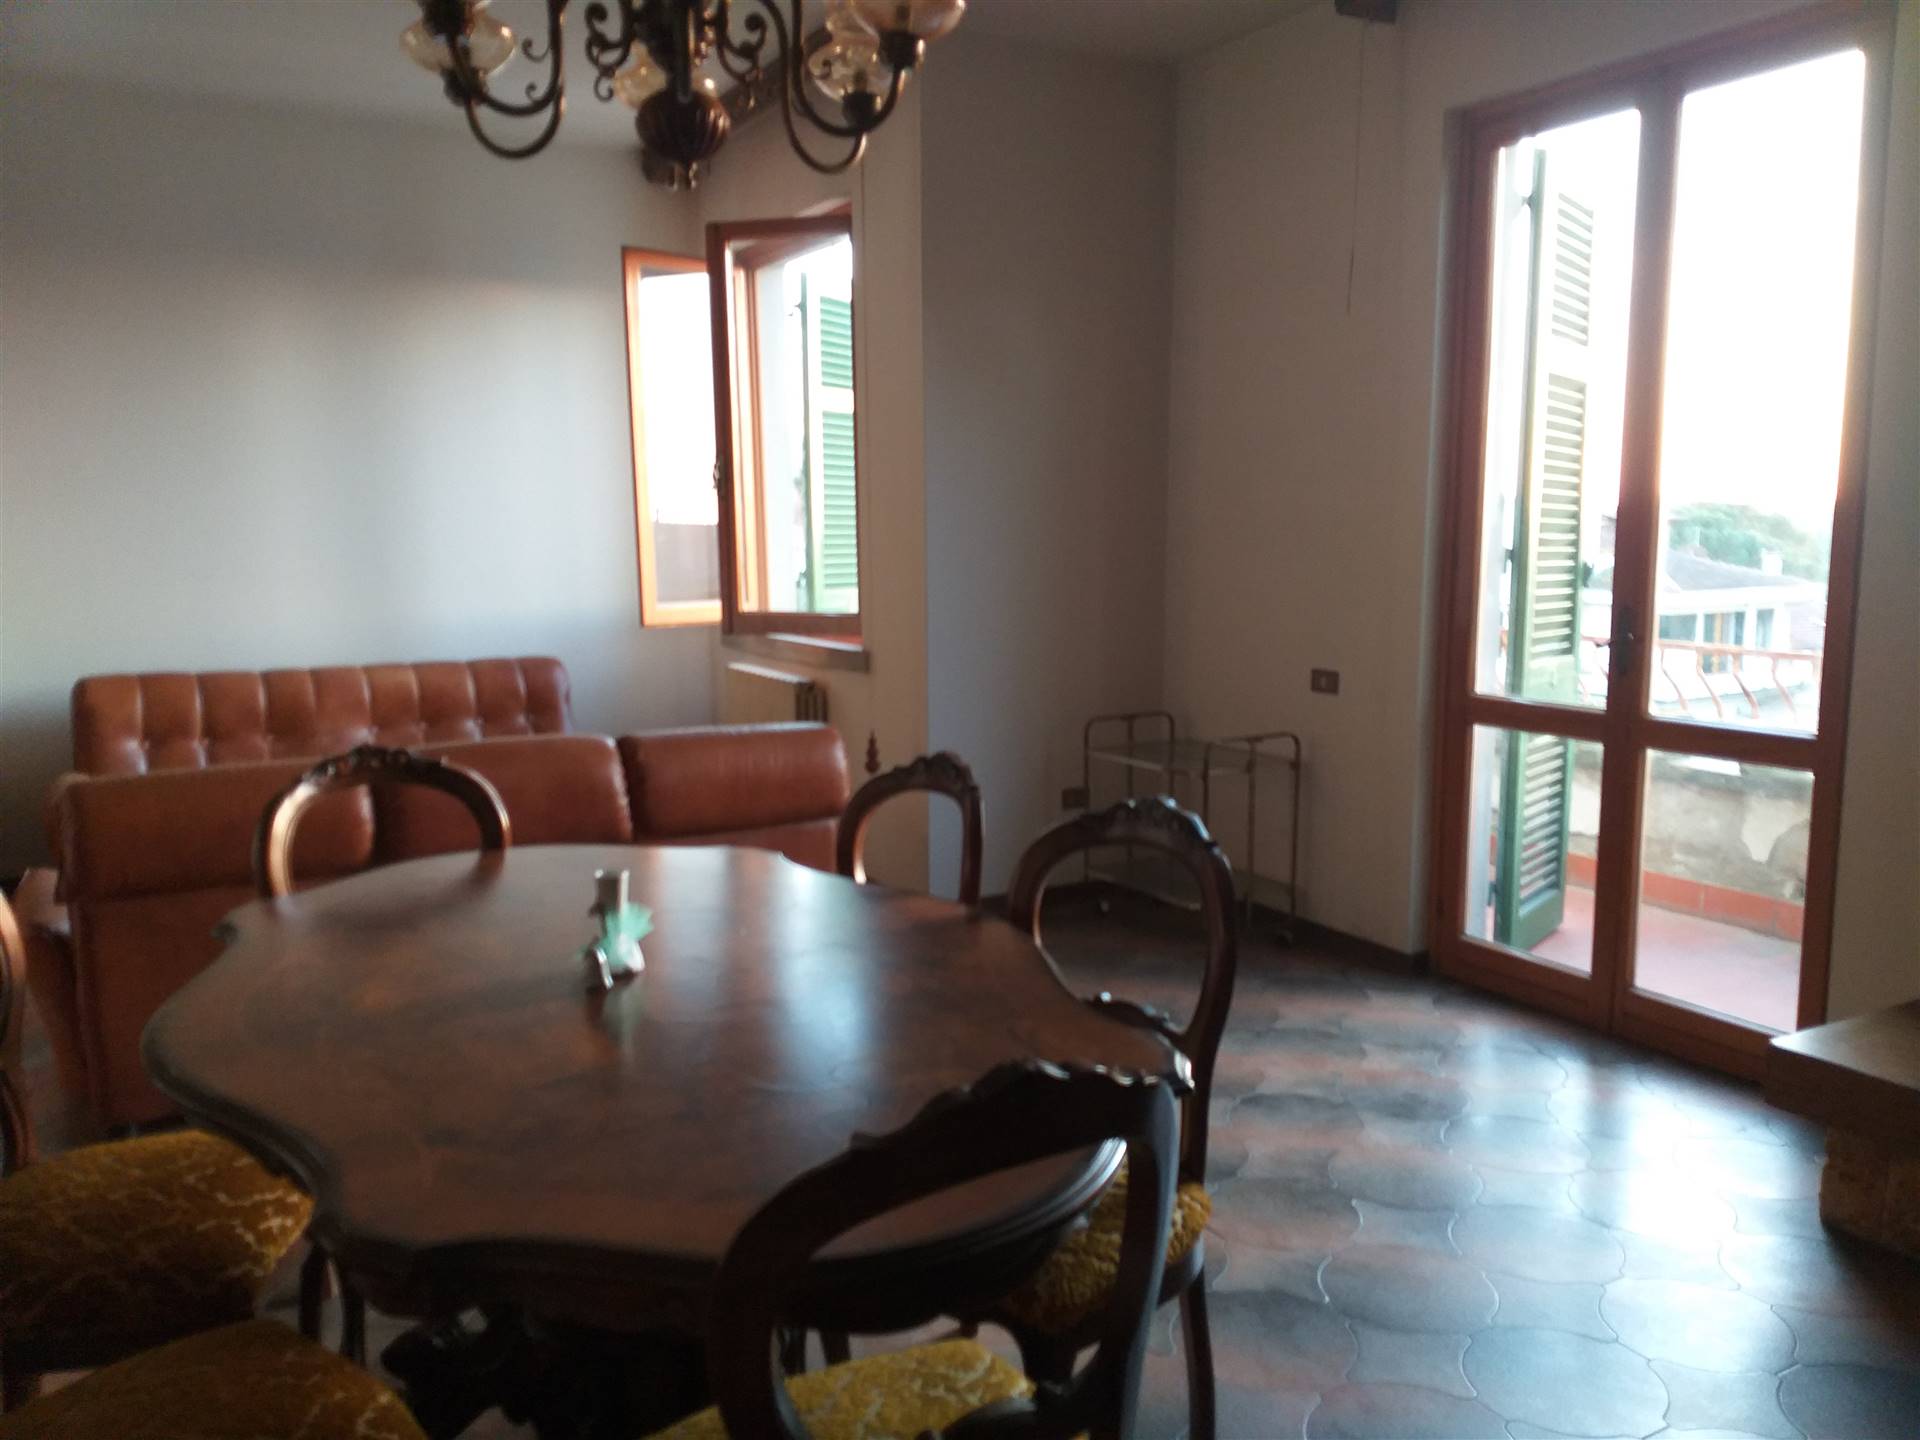 Villa Bifamiliare in vendita a Montelupo Fiorentino, 4 locali, Trattative riservate | CambioCasa.it